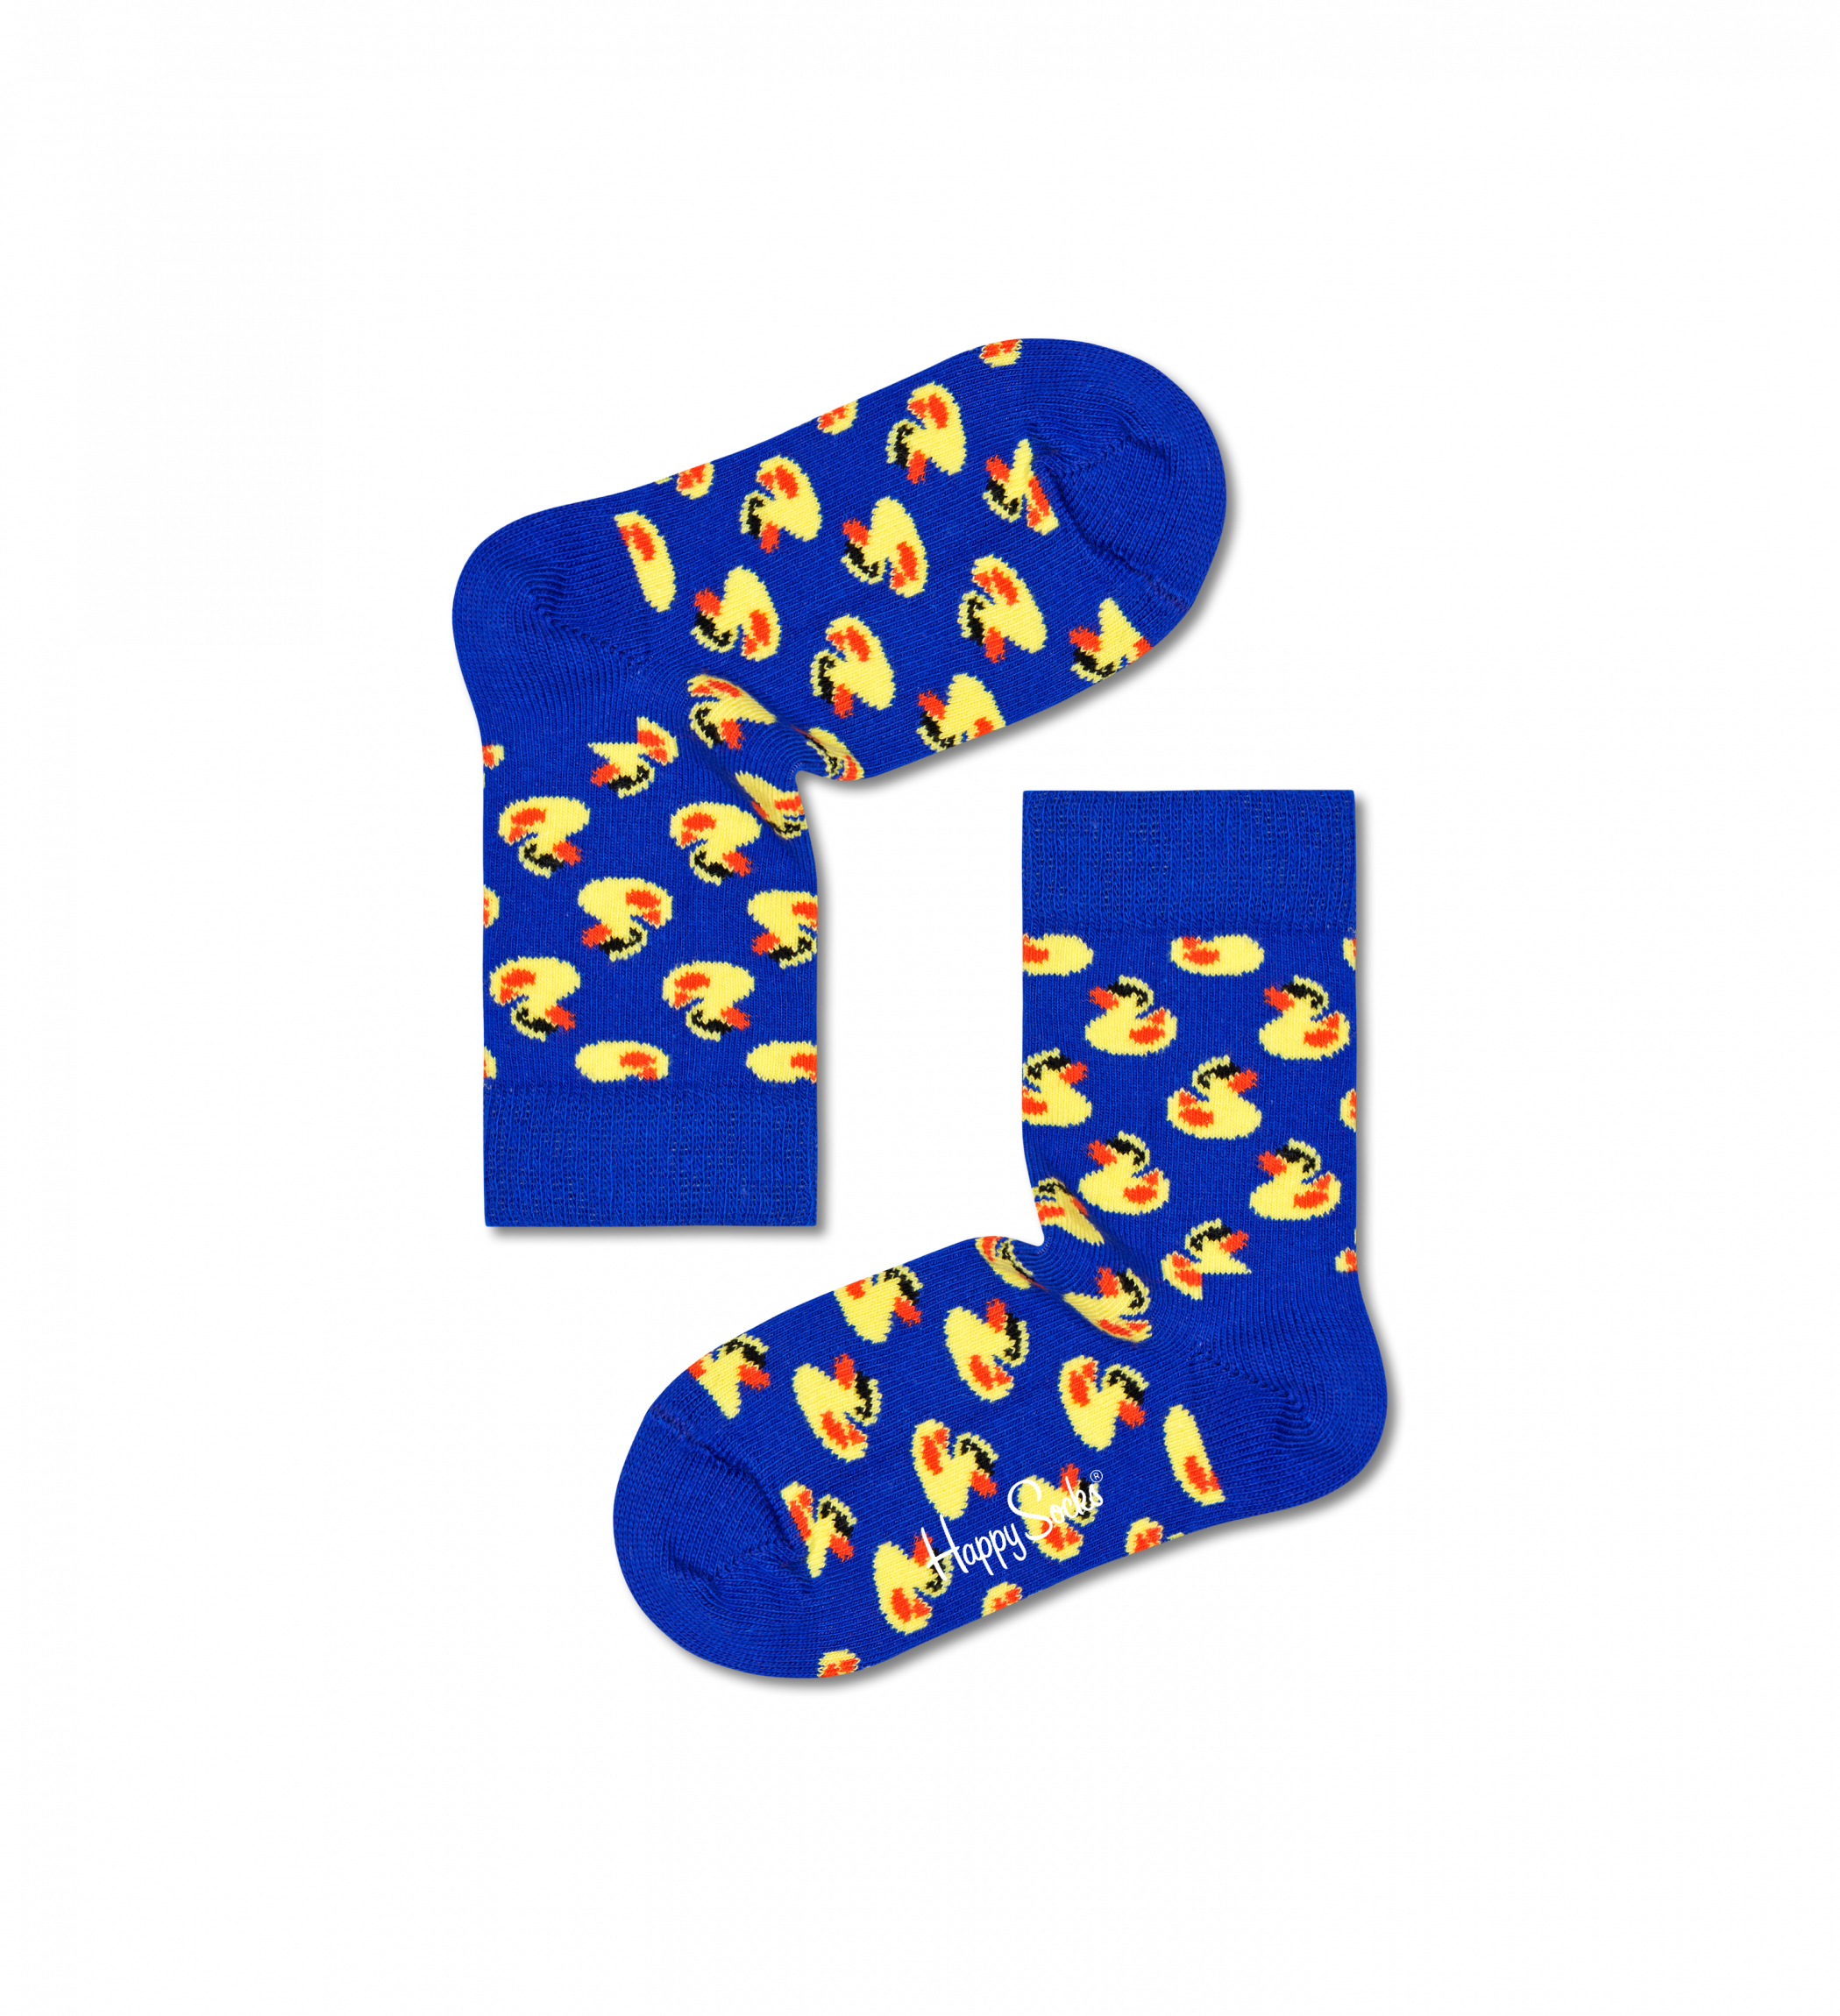 Detské modré ponožky Happy Socks s kačičkami, vzor Rubberduck